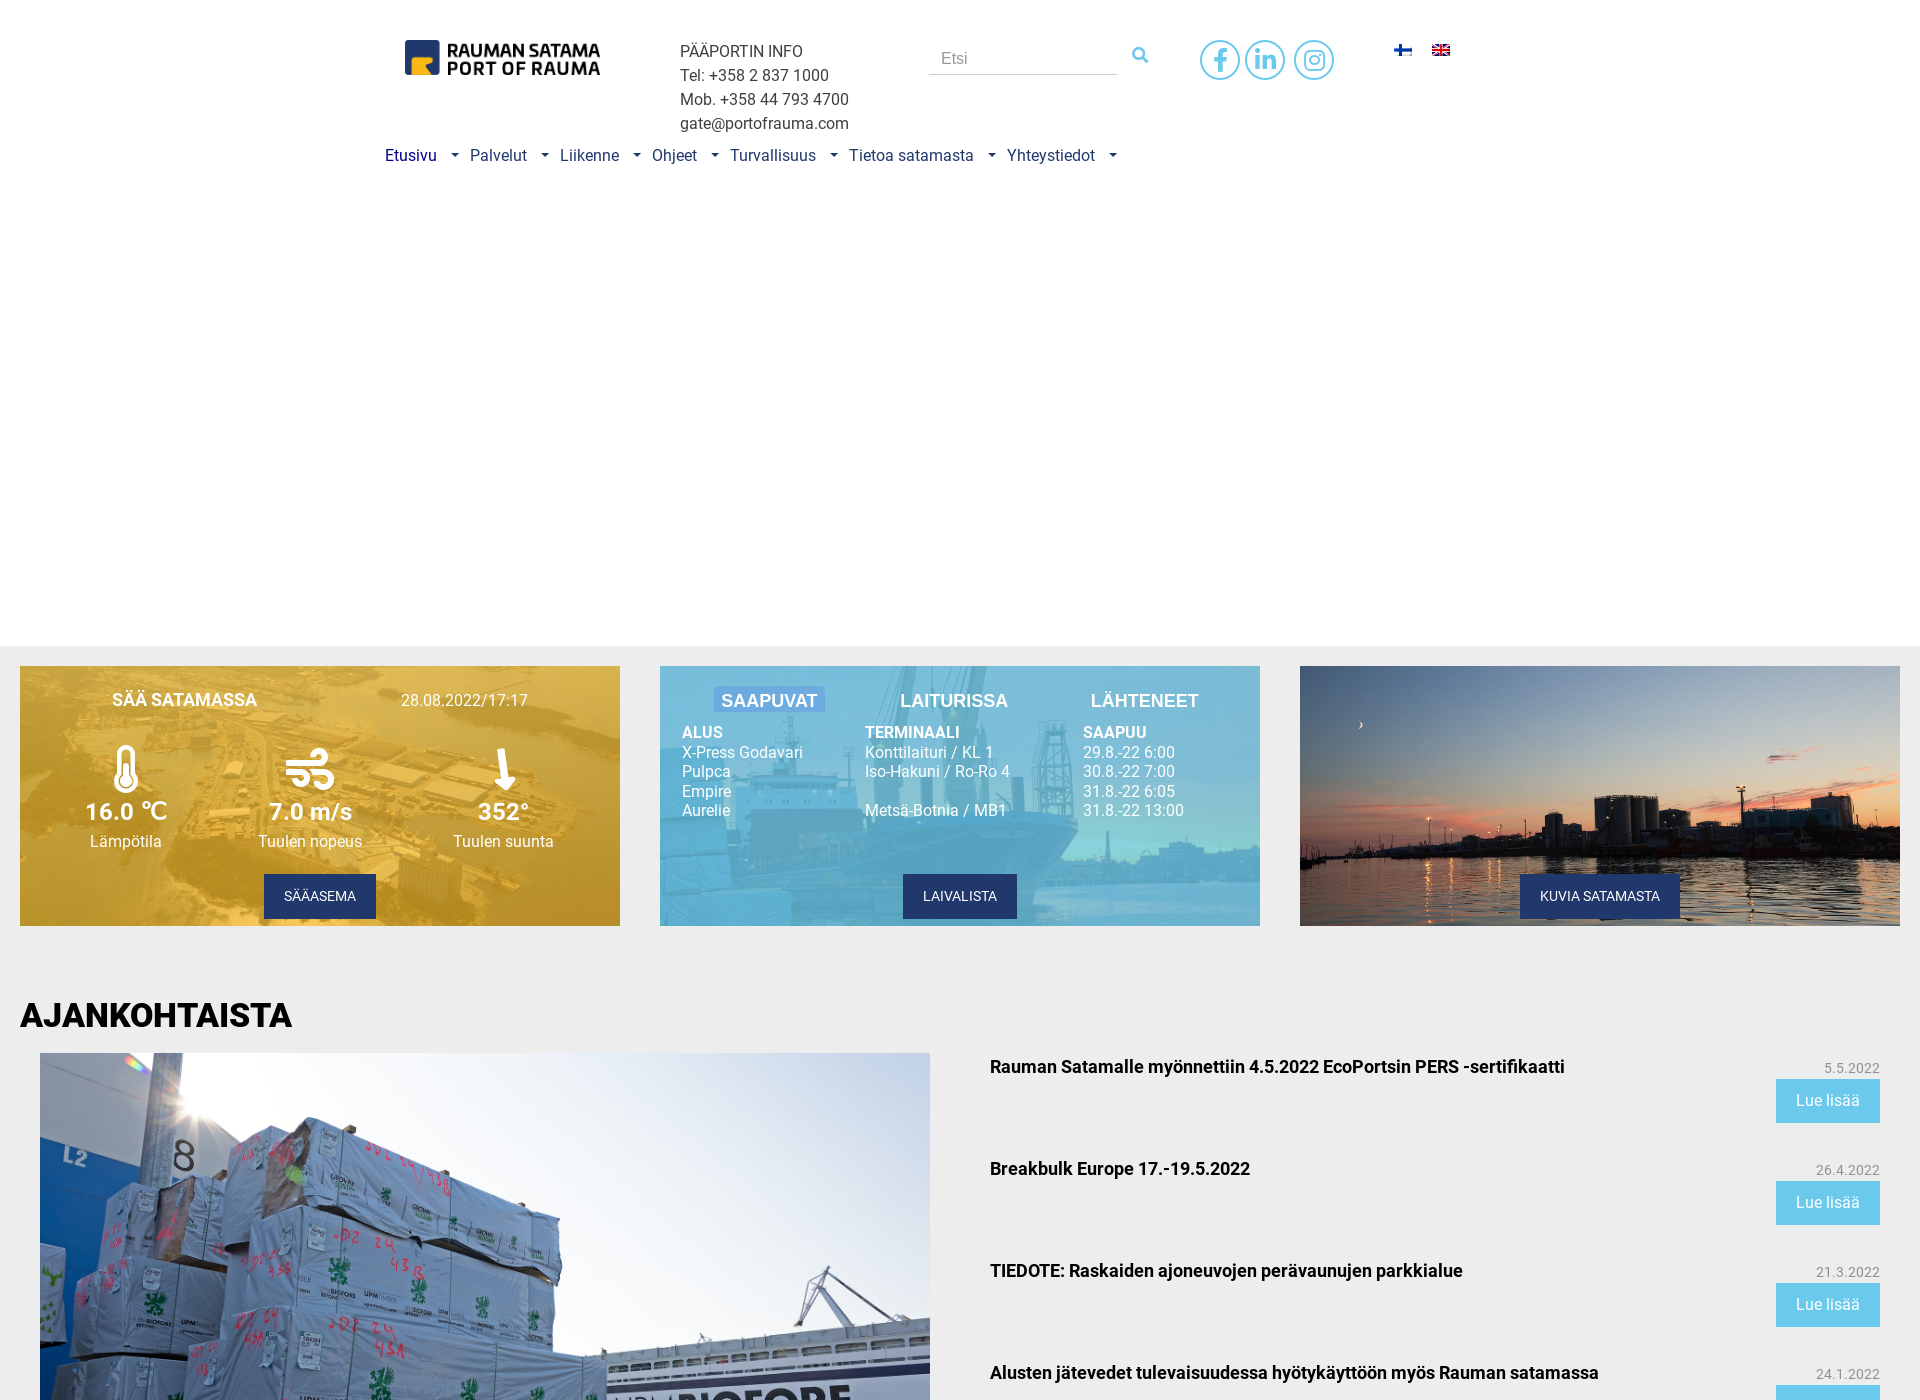 Skärmdump för portofrauma.fi